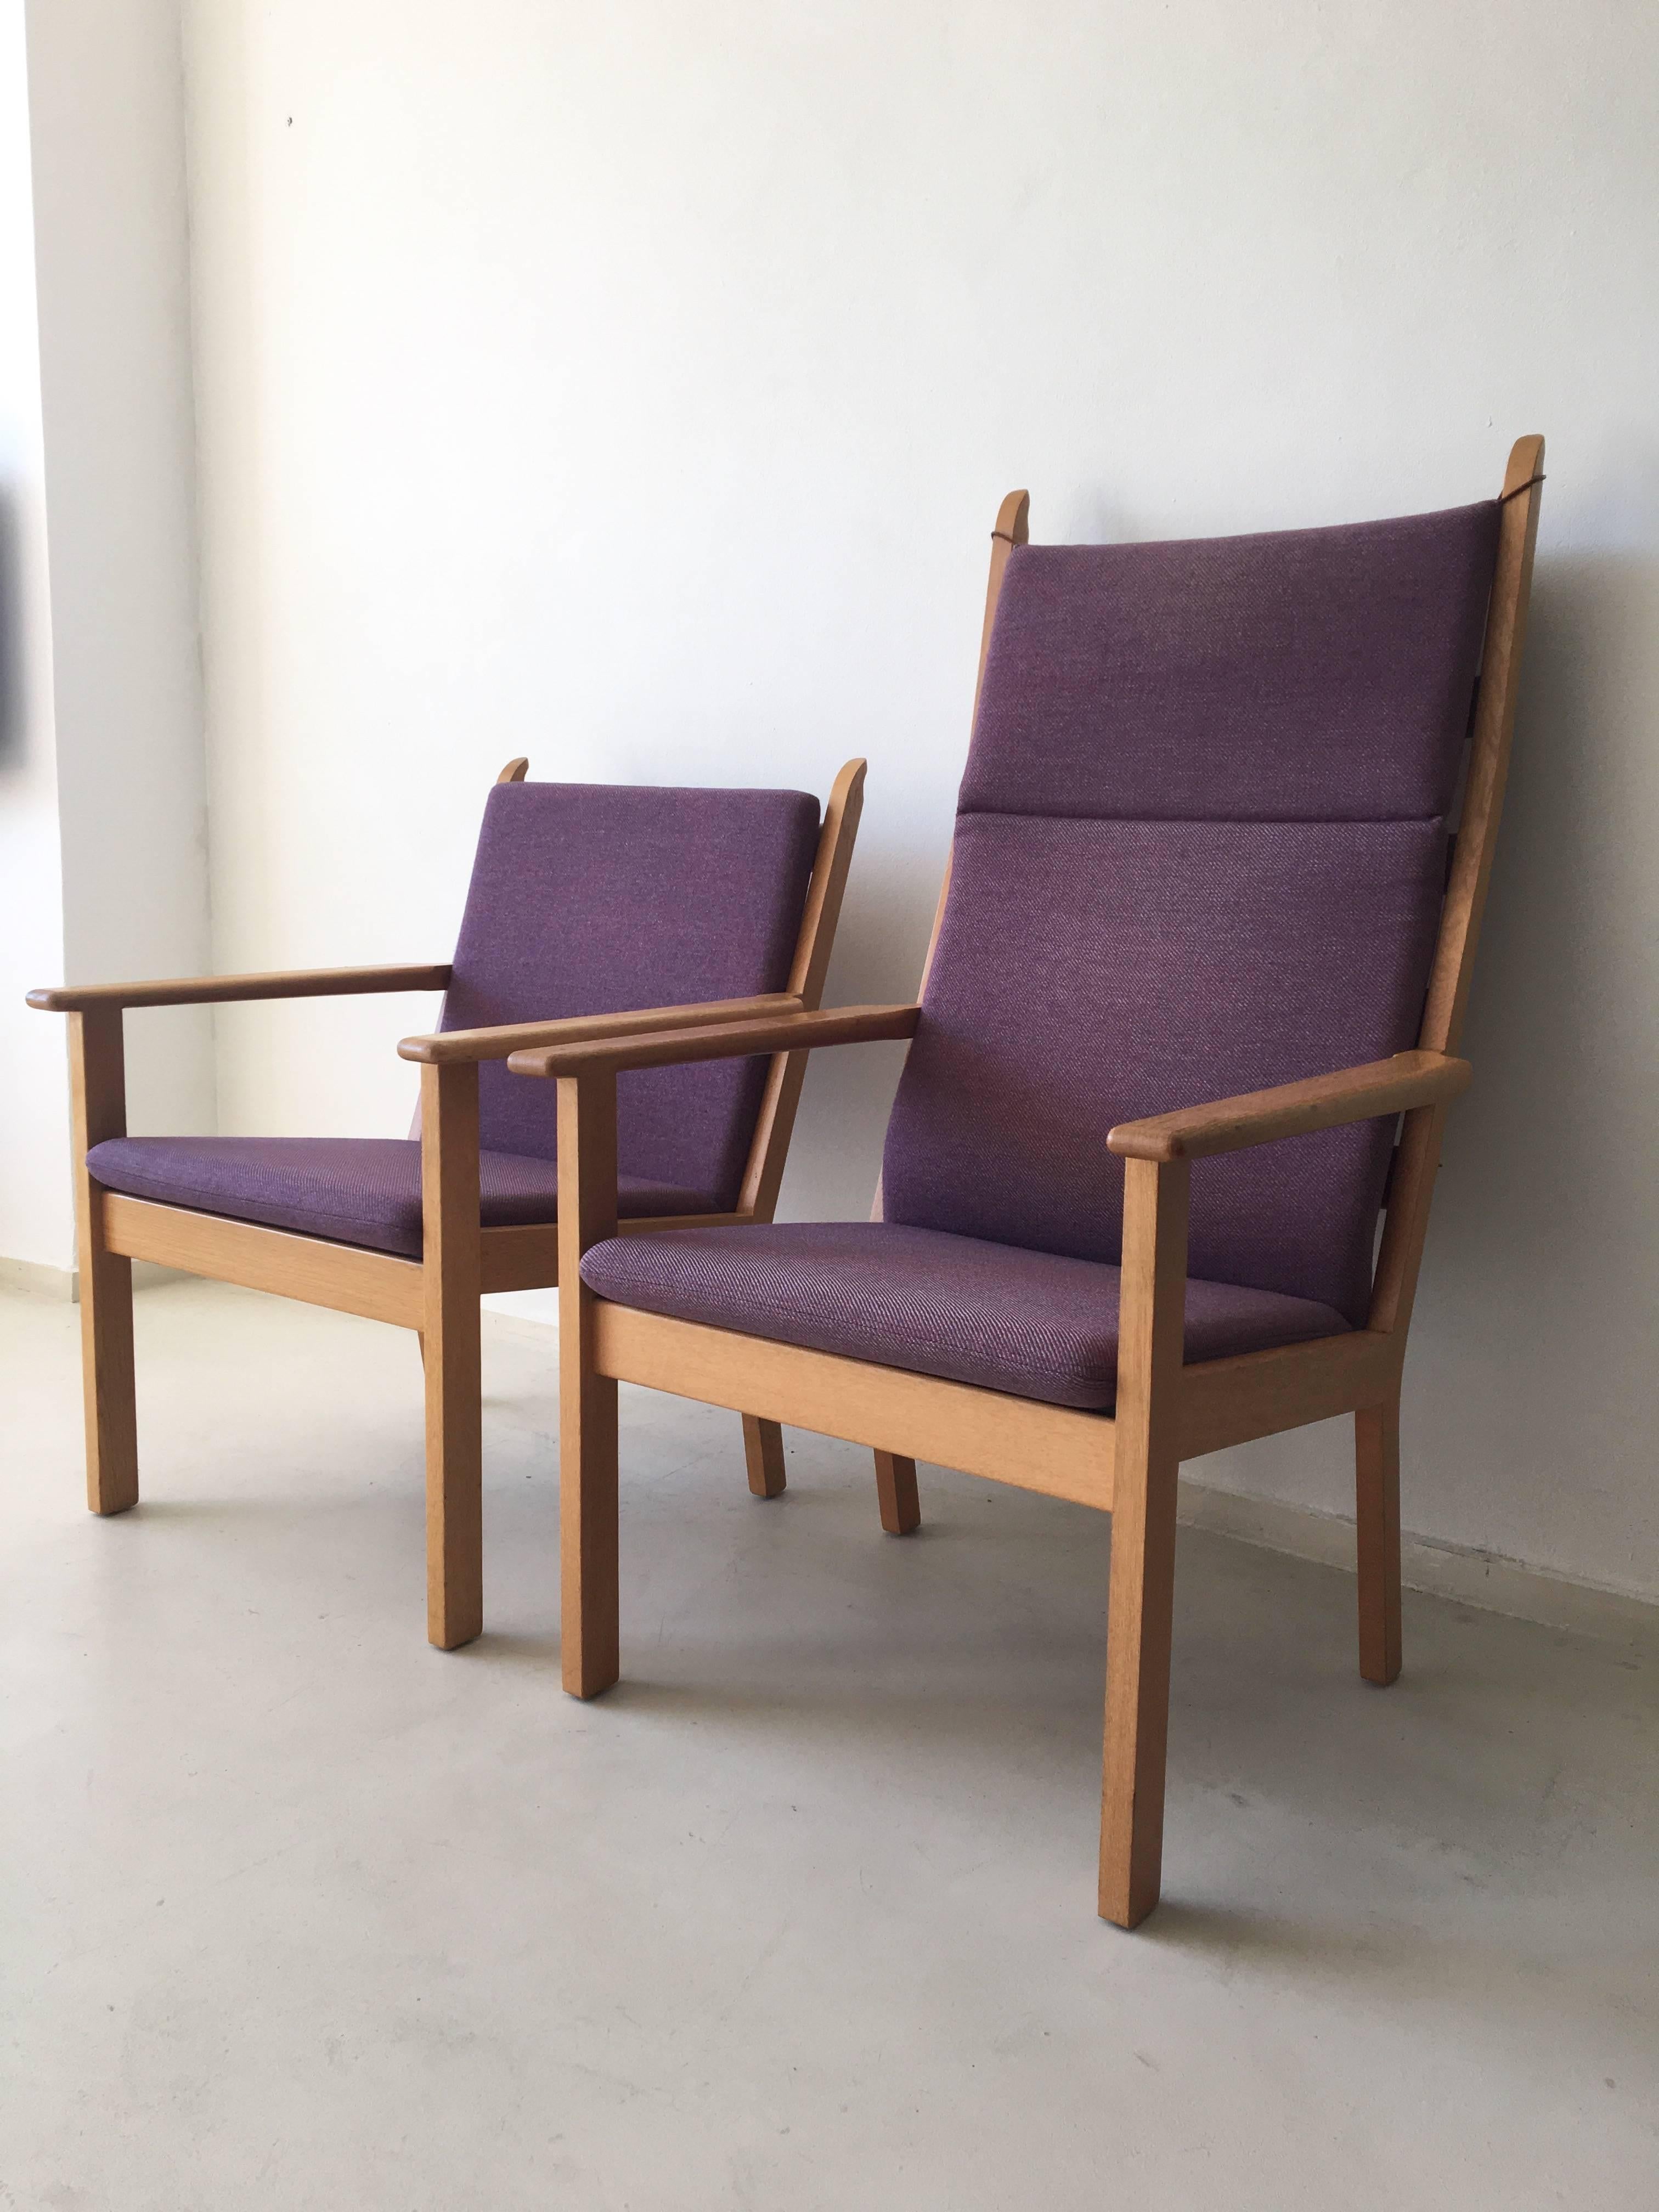 Seltene Sesselgruppe, bestehend aus einem Sessel und einem Loungesessel, entworfen von Hans Wegner für GETAMA im Jahr 1984. Sie wurden etwa in den 1990er Jahren hergestellt.

Diese Garnitur hat einen schönen Bezug aus rosa/lila Wolle und einen